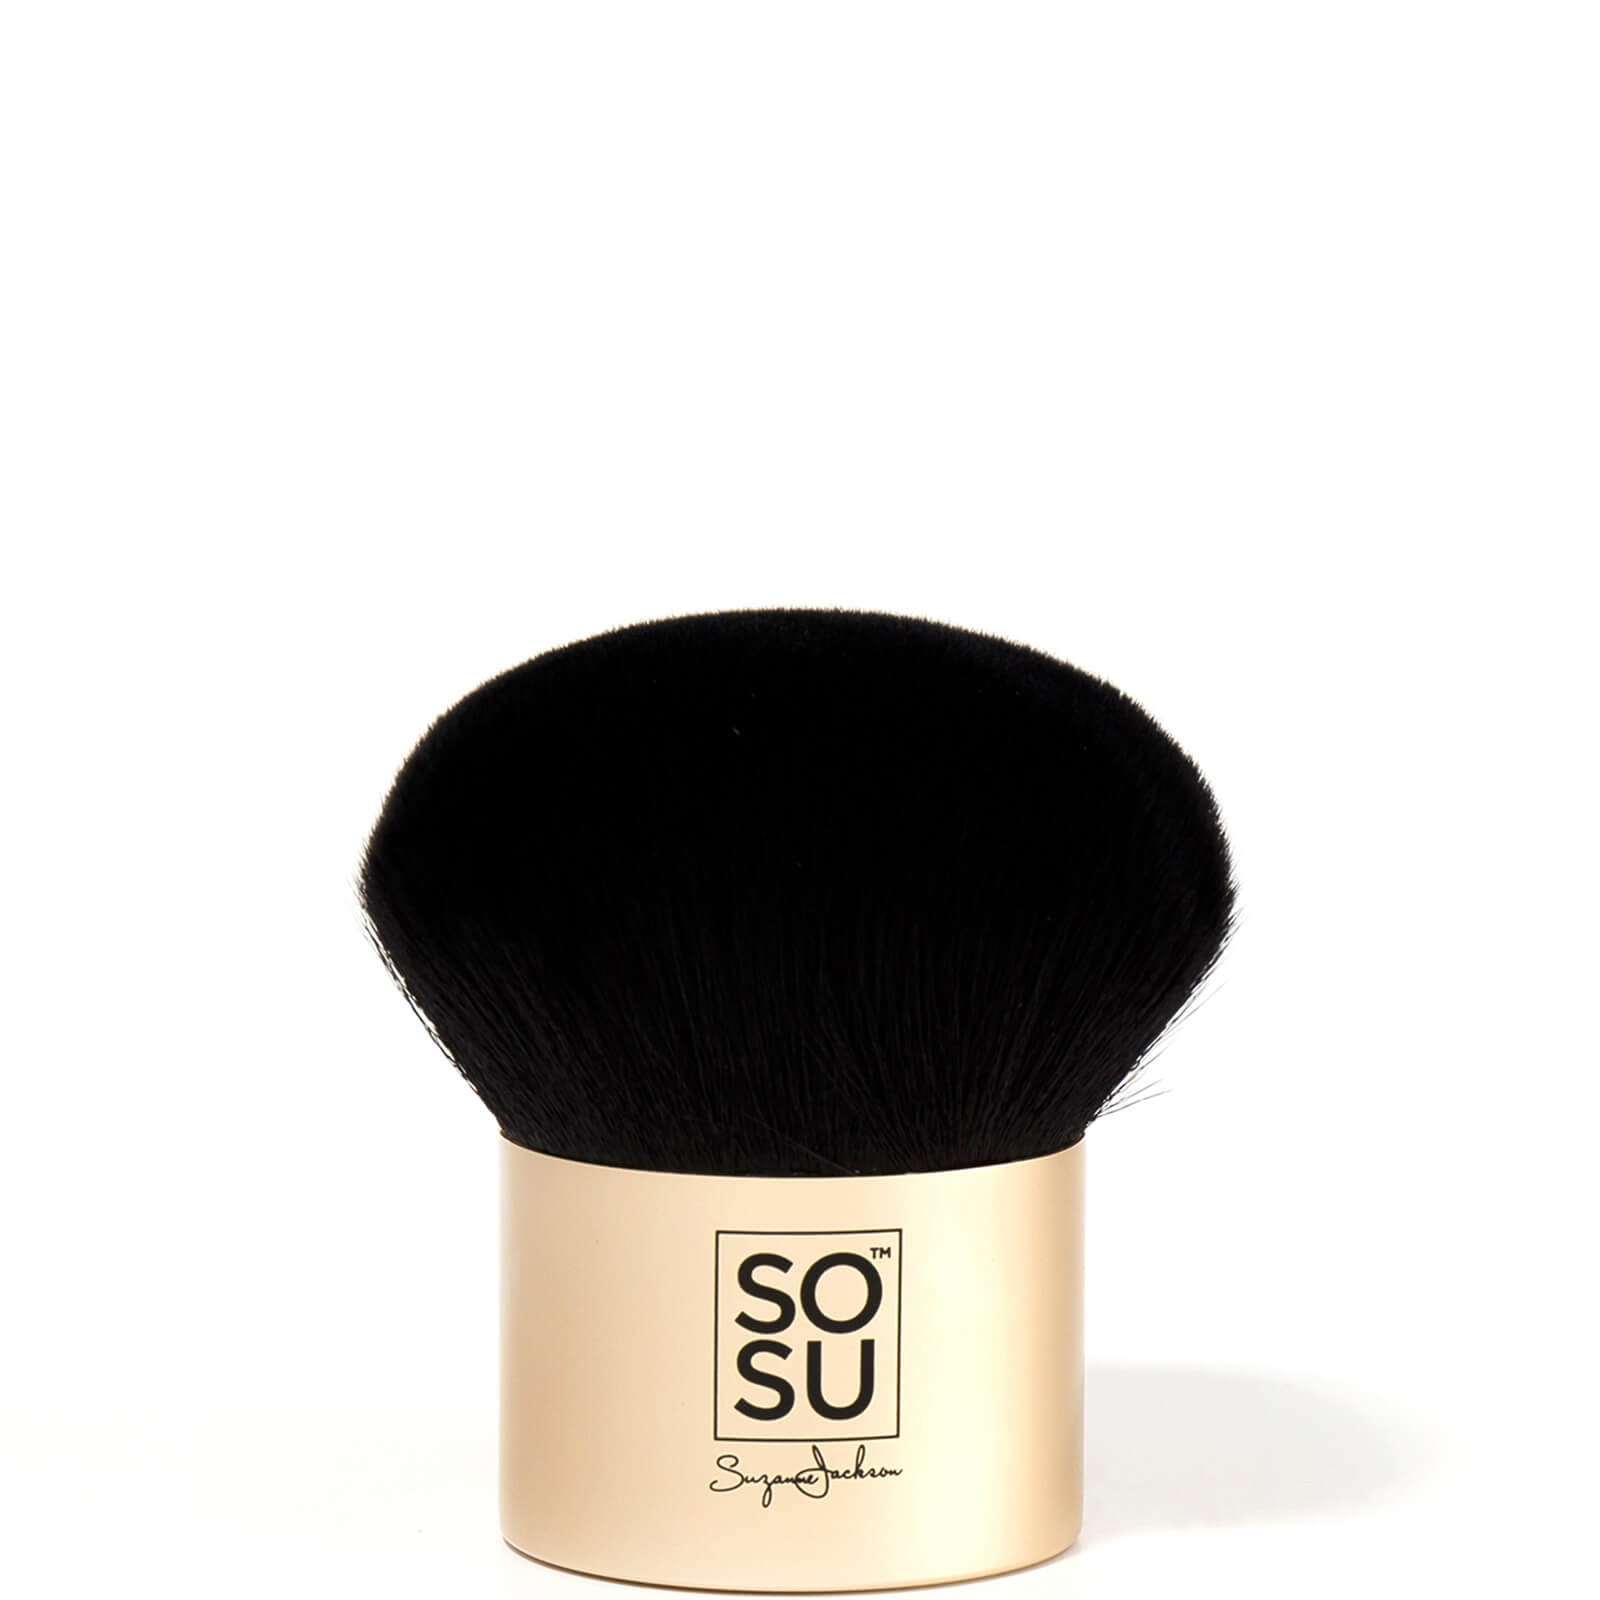 Photos - Makeup Brush / Sponge Dripping Gold Kabuki Brush SOSU5023